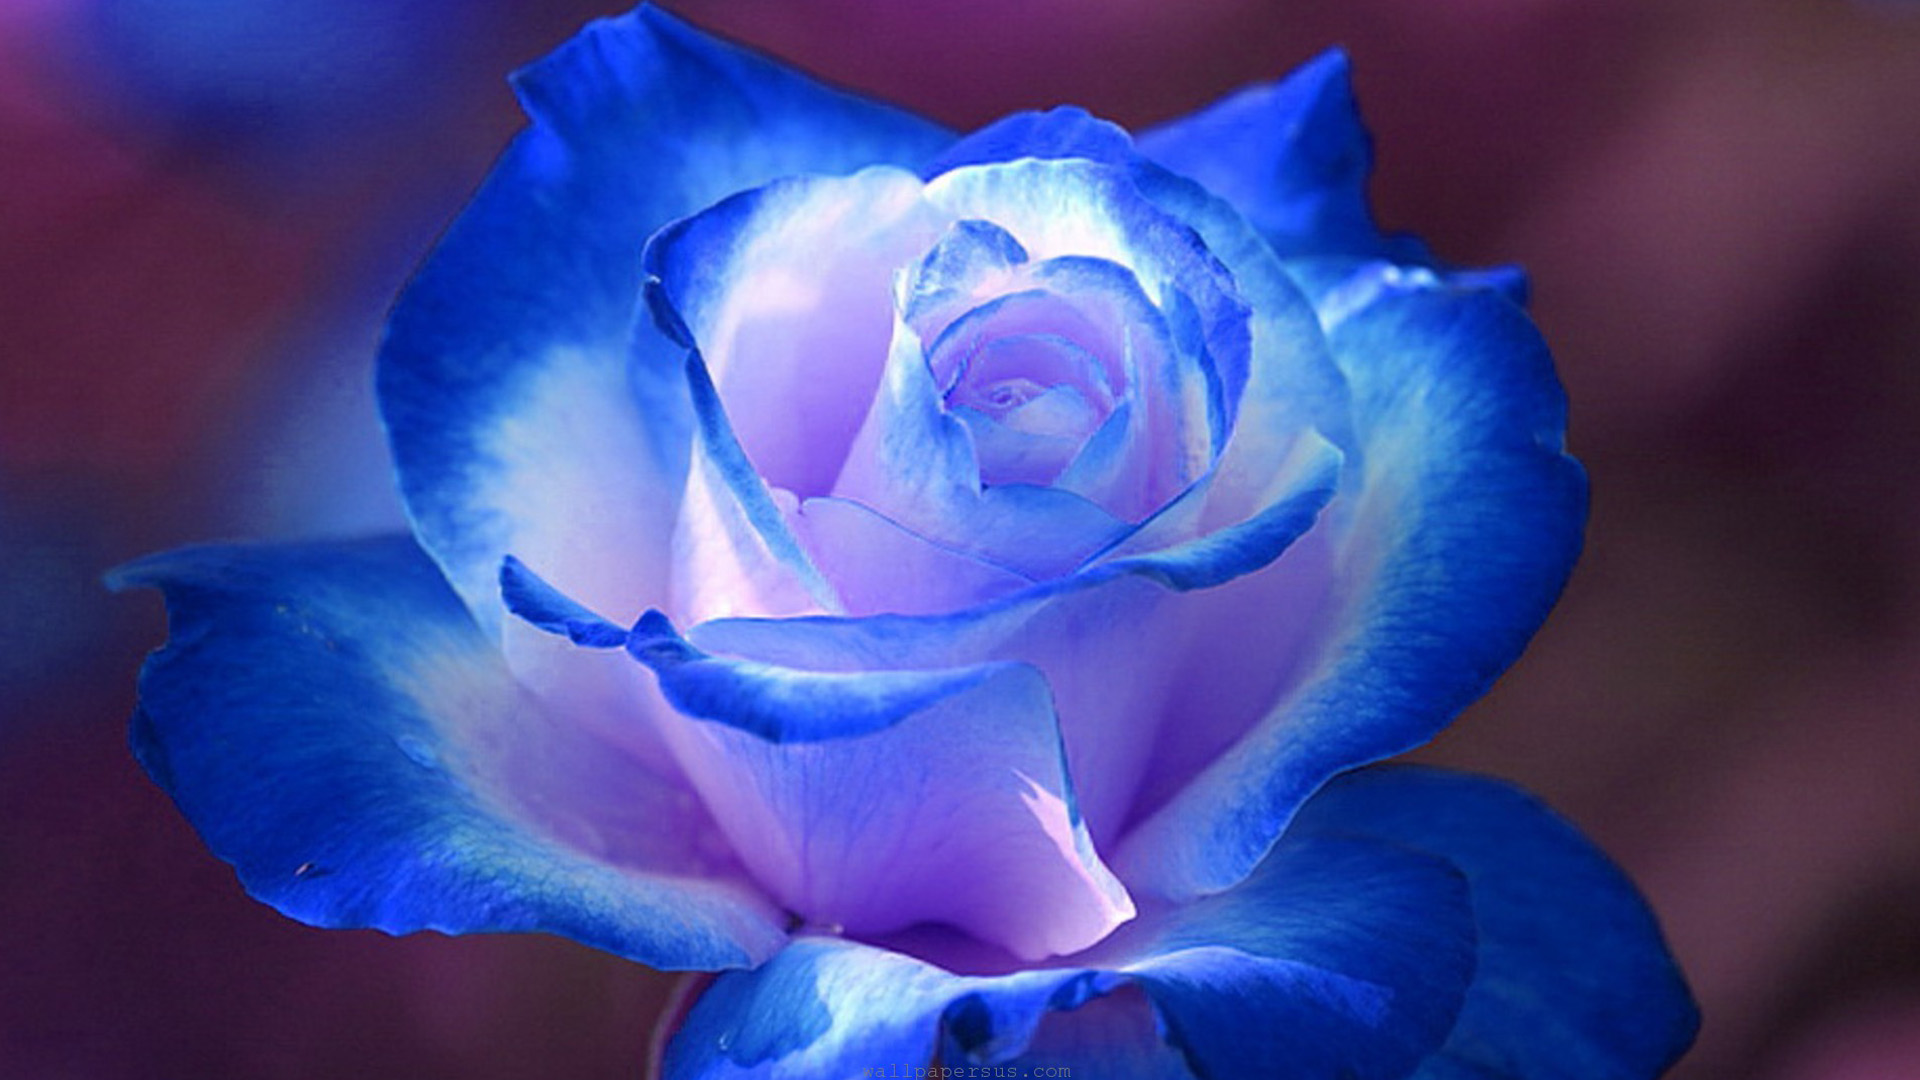 Breathtaking Blue Rose Wallpapers, Rose Flower images, Rose ...